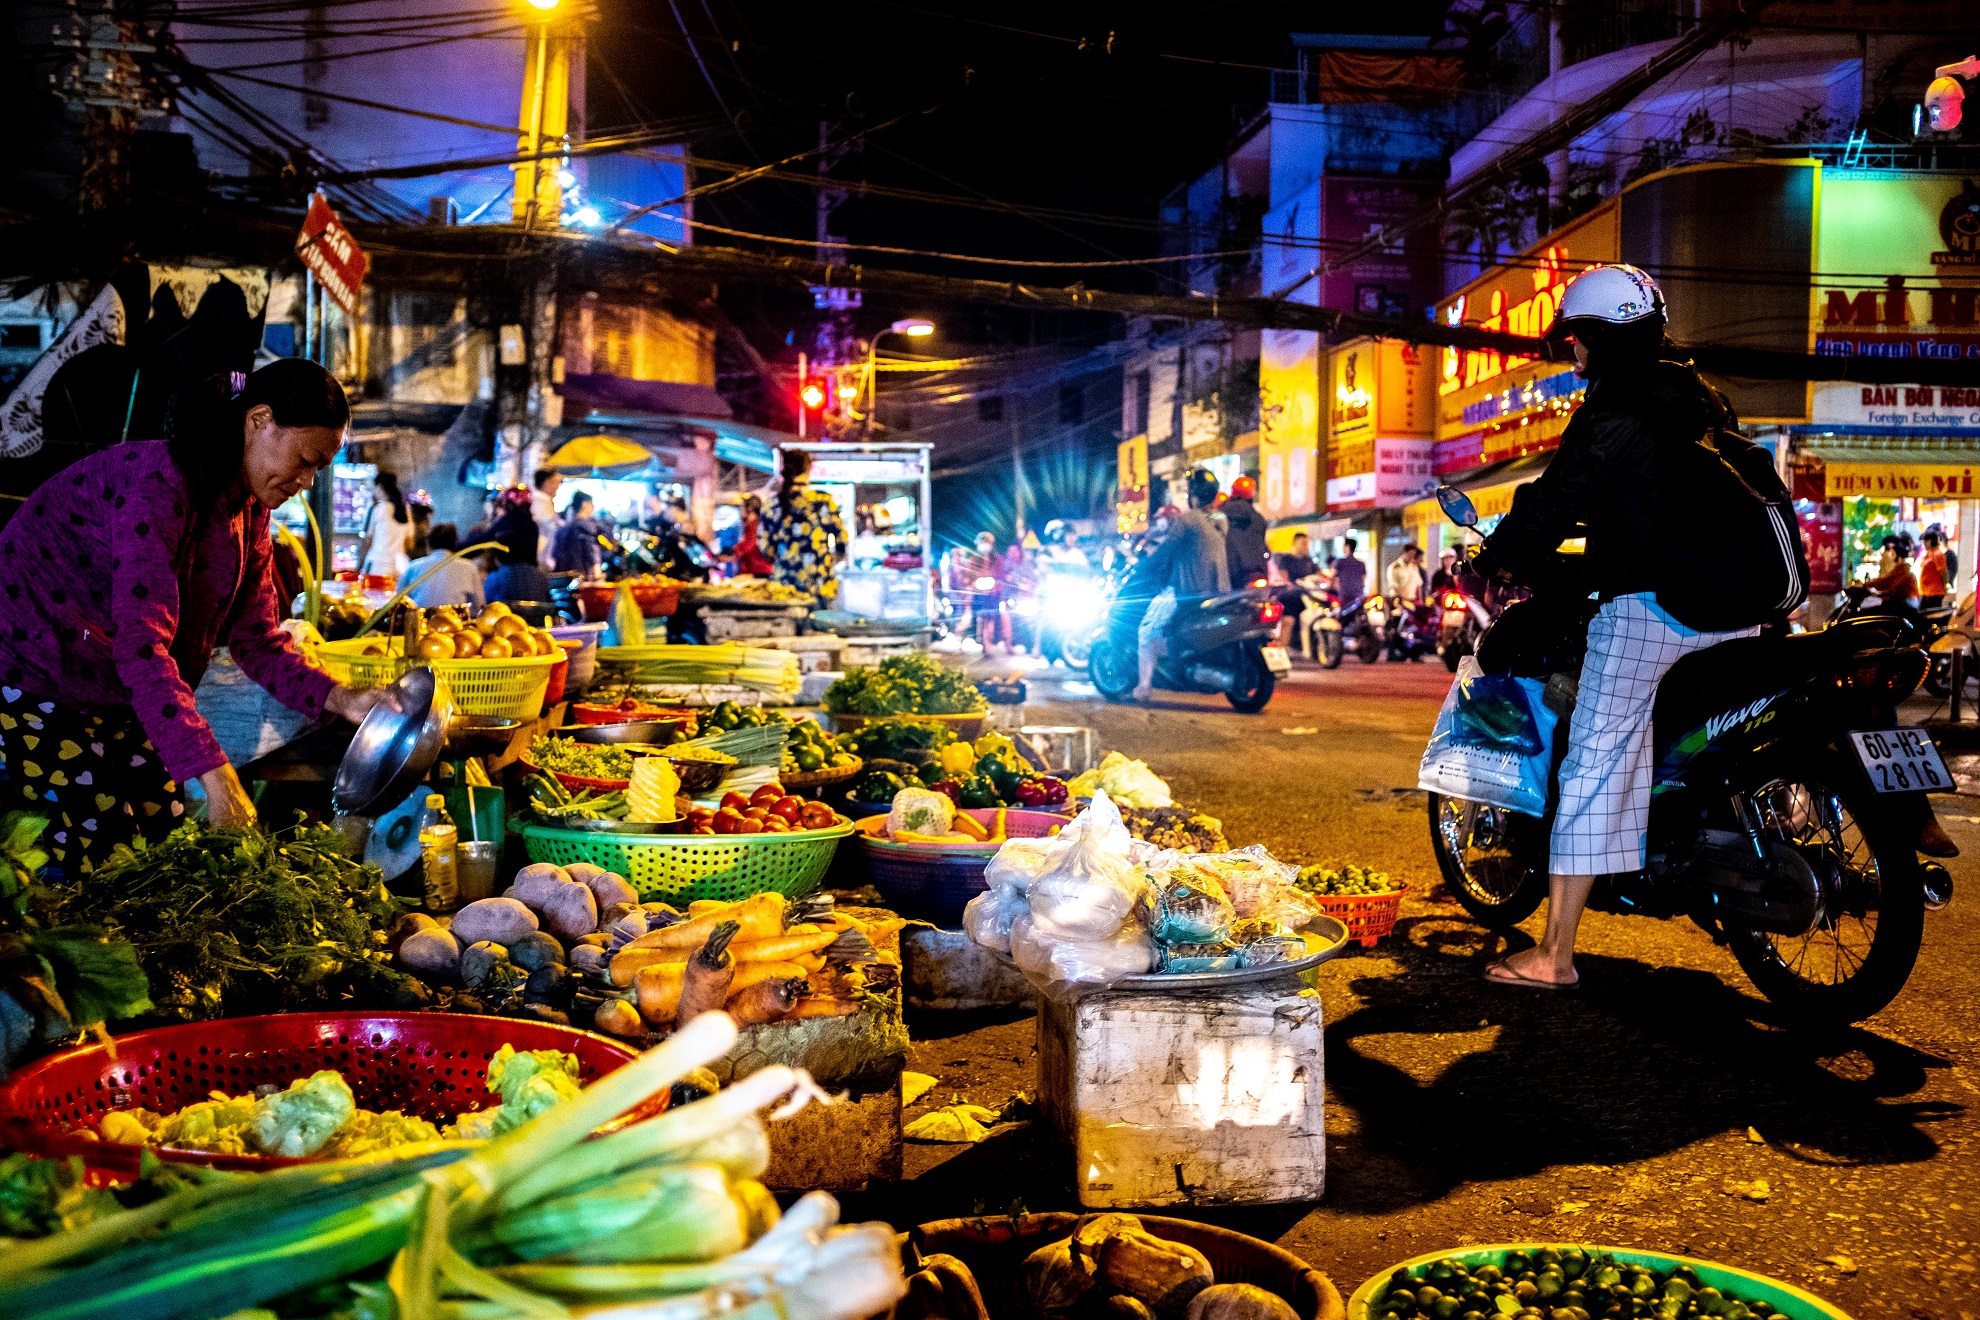 Marchande de légumes - Saigon la nuit